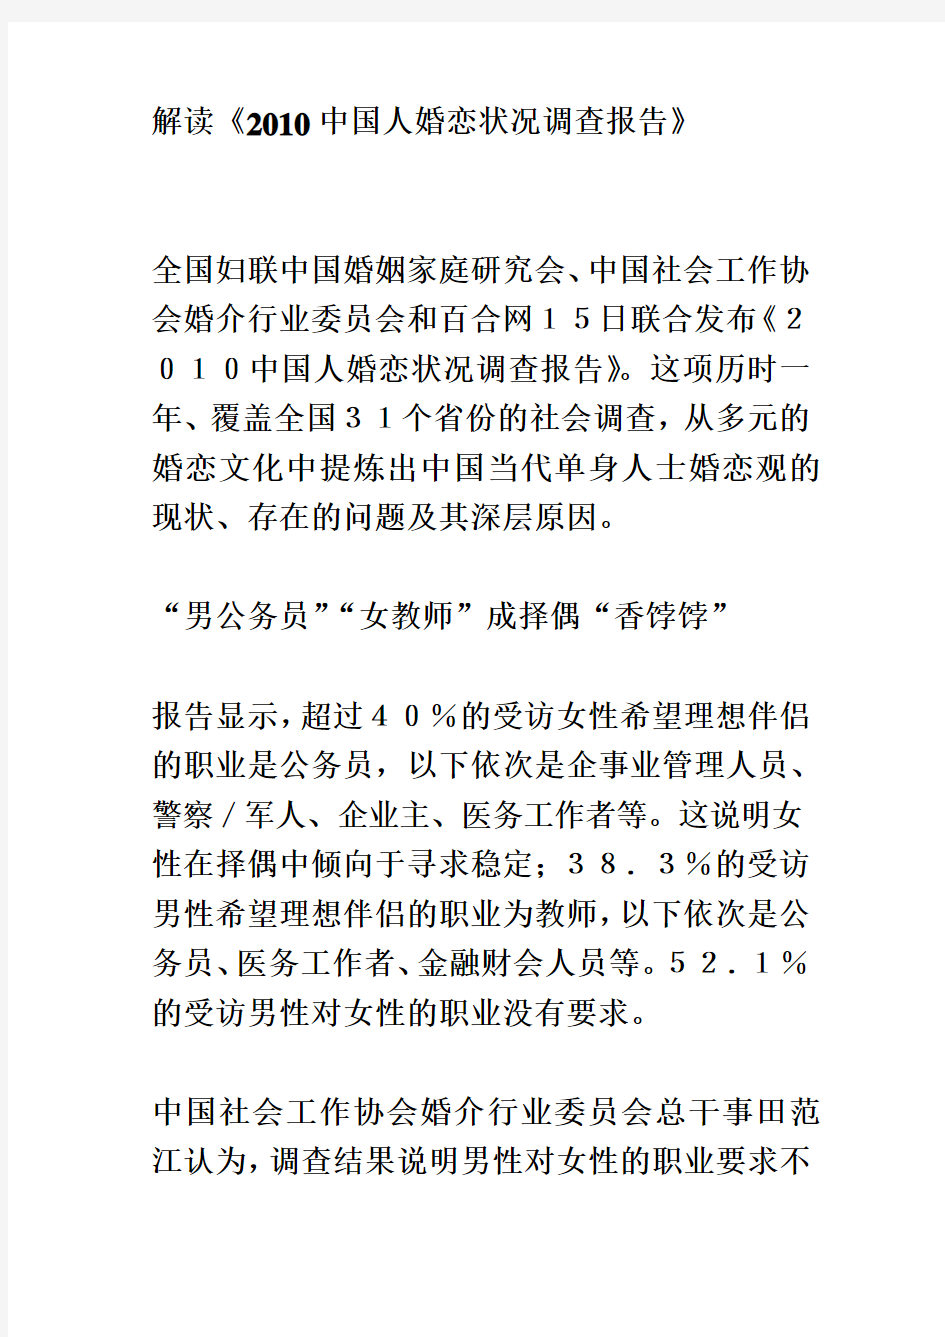 解读《2010中国人婚恋状况调查报告》(同名20785)